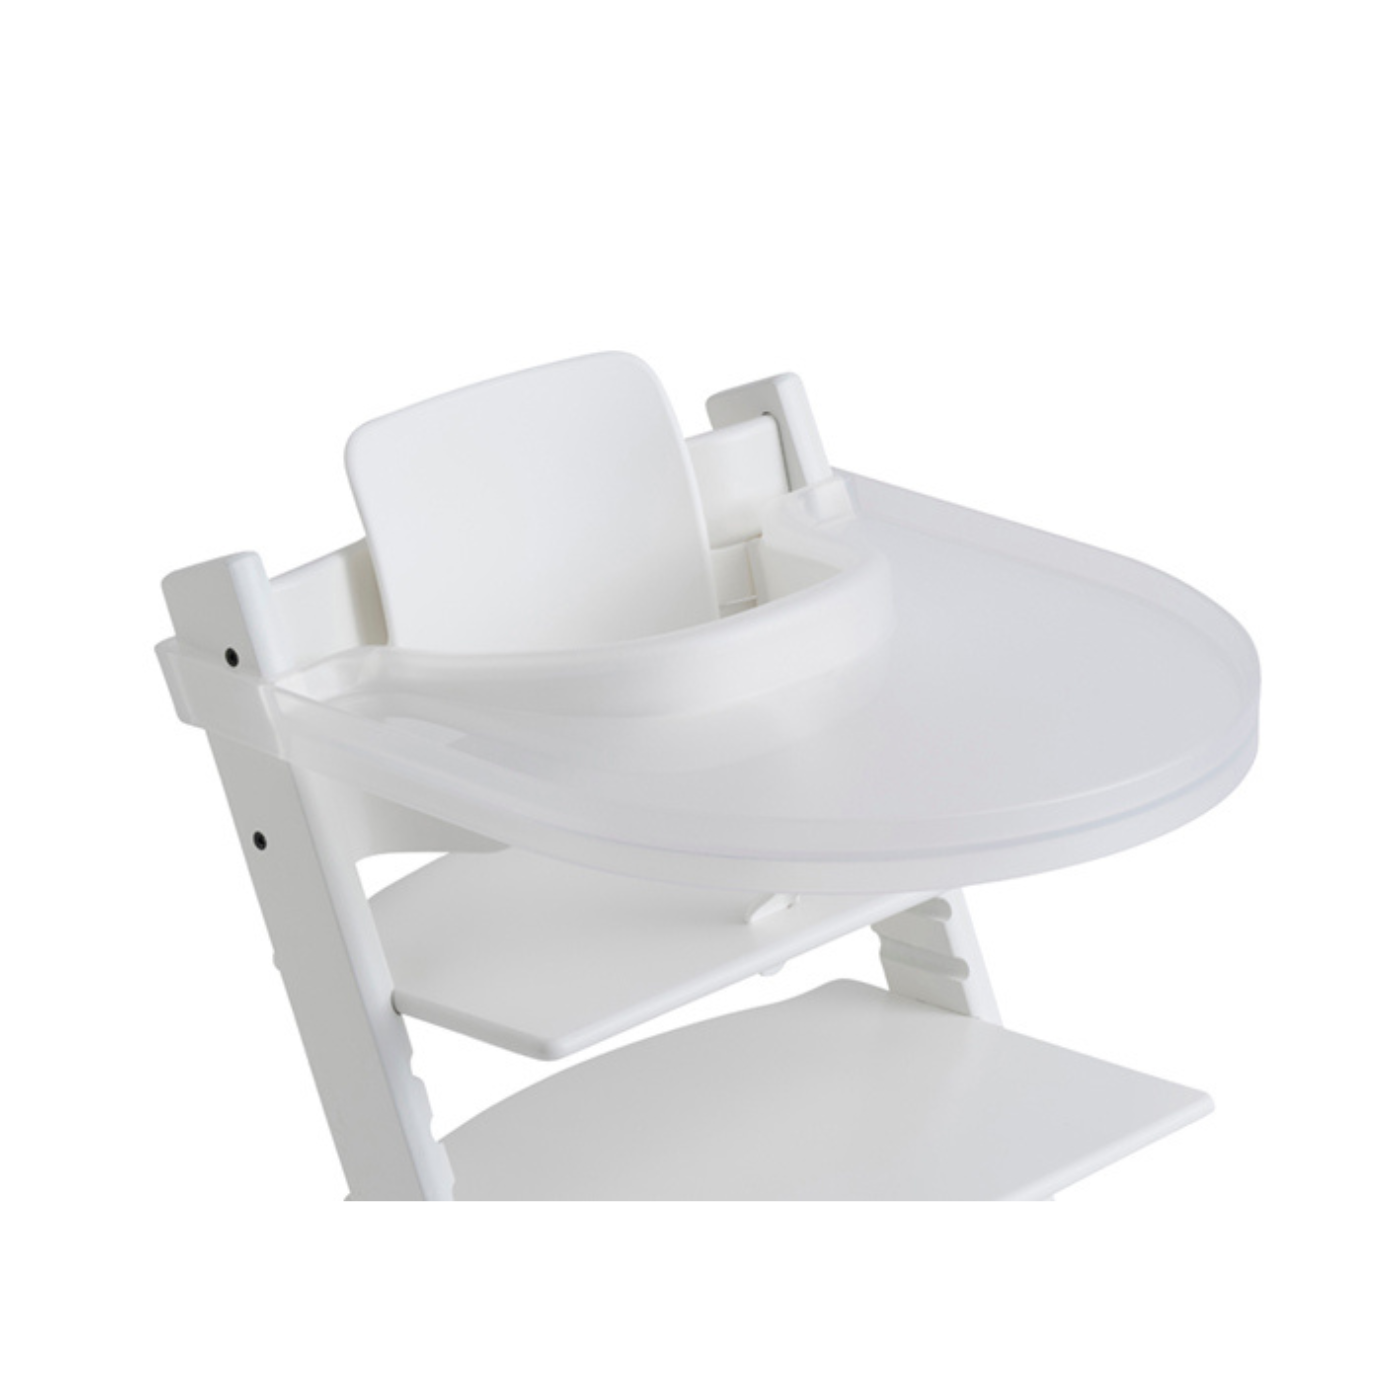 Bandeja compatible con silla Stokke Tripp Trapp, bandeja para silla alta,  accesorios para silla alta para niños de 6 a 36 meses (blanco)